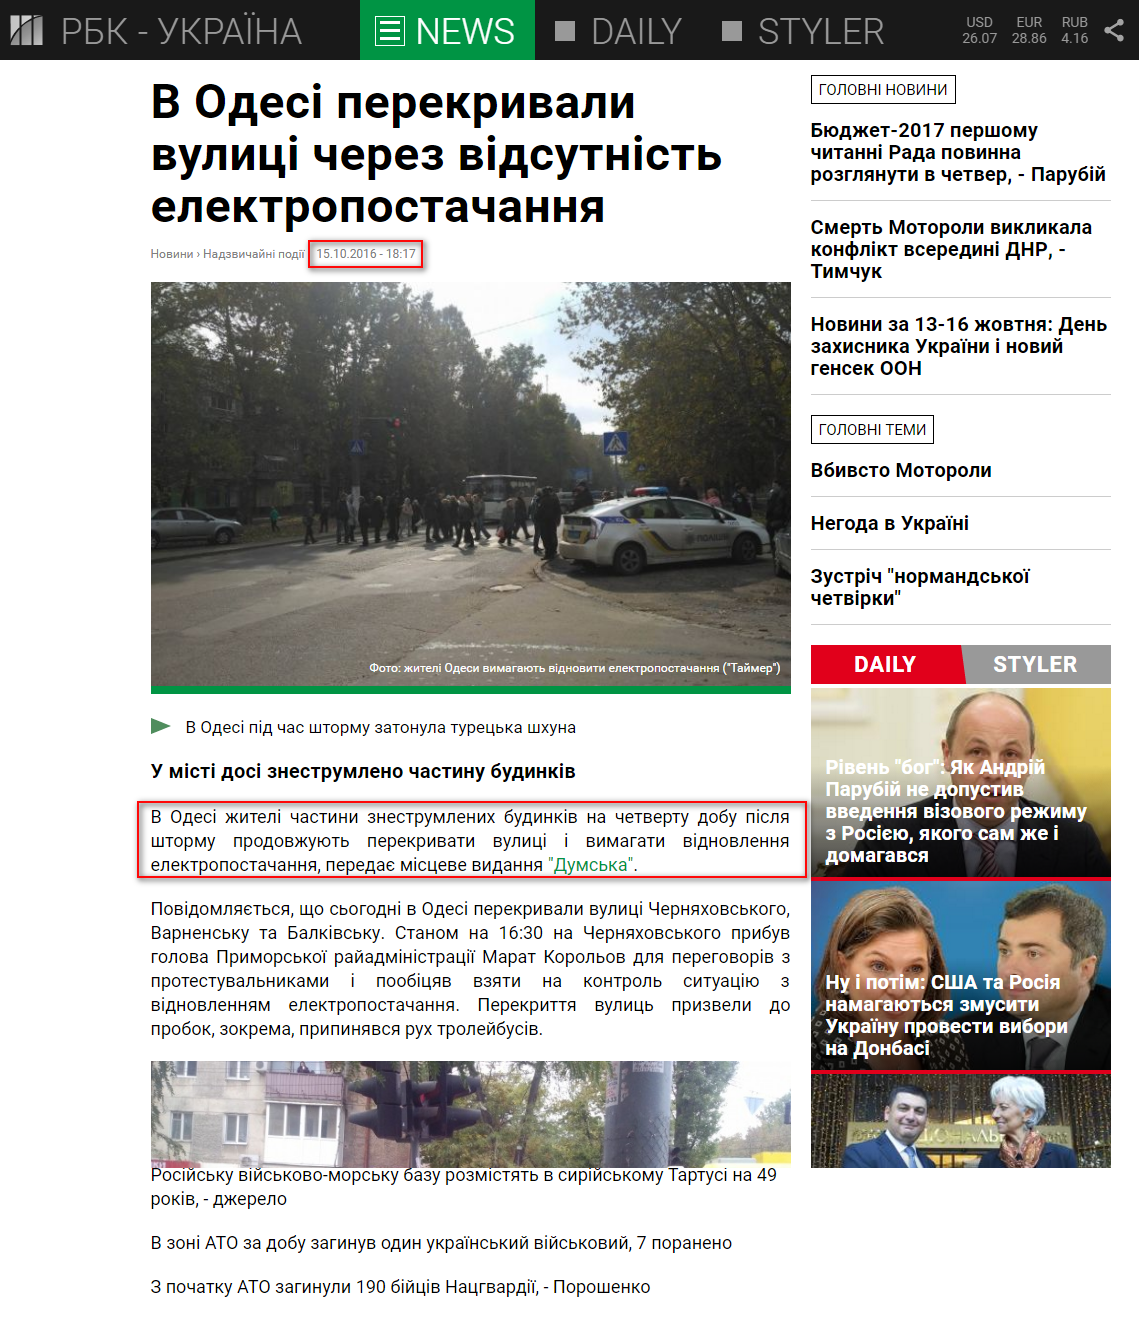 https://www.rbc.ua/ukr/news/odesse-perekryvali-ulitsy-otsutstviya-elektrosnabzheniya-1476542830.html